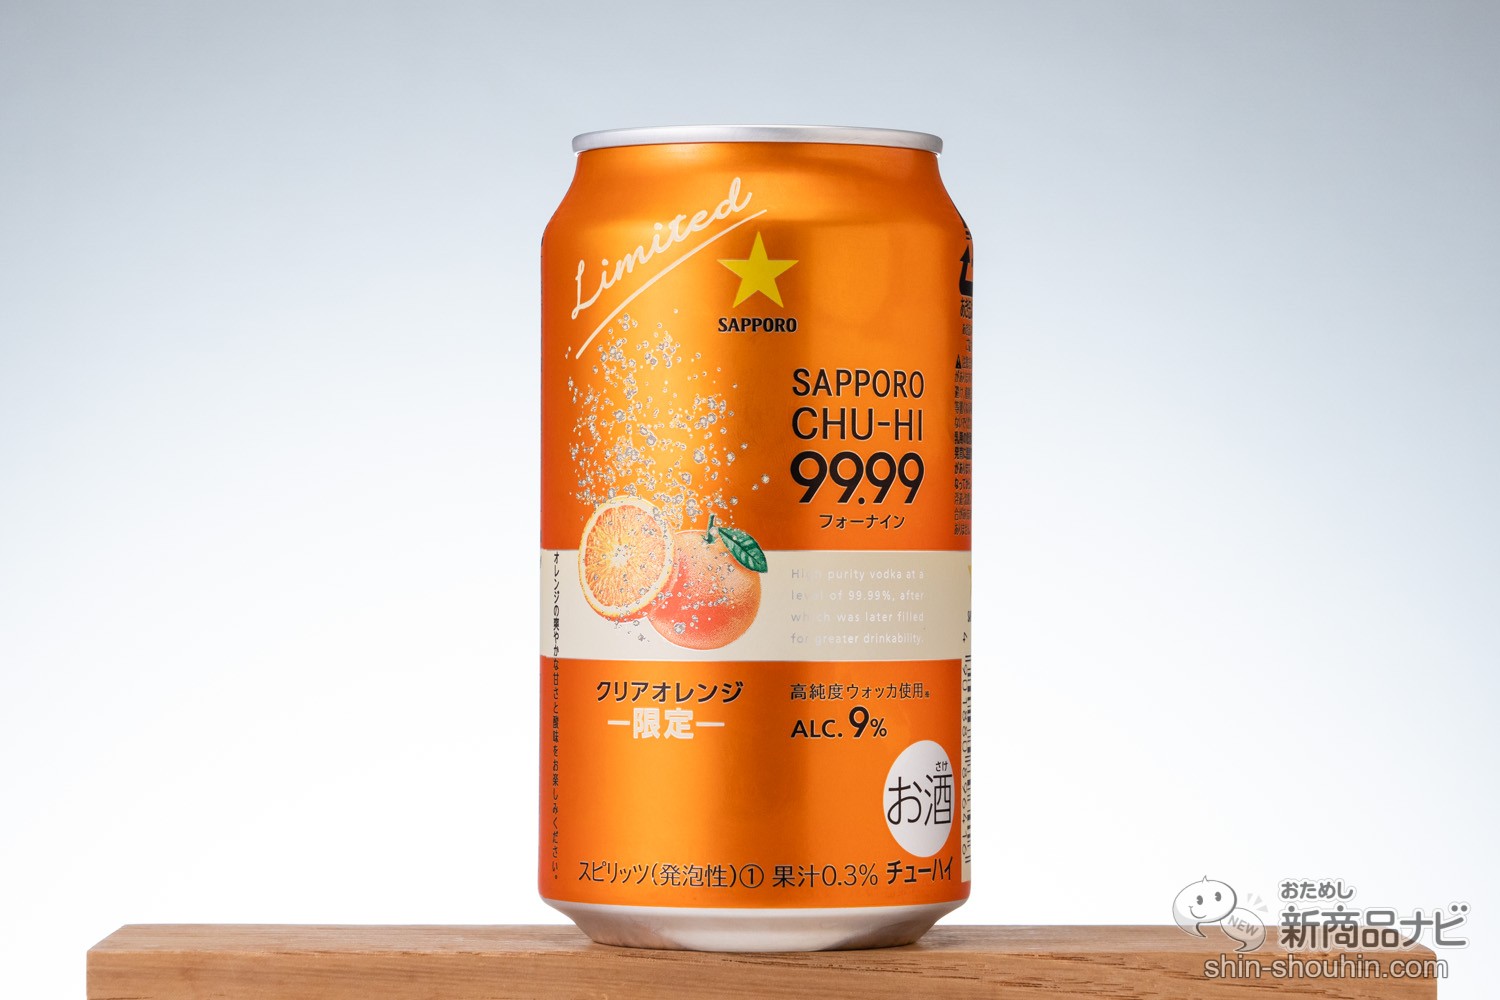 おためし新商品ナビ Blog Archive 30代に人気のオレンジ味でしっかり酔える高純度 9パー缶 サッポロチューハイ99 99クリアオレンジ